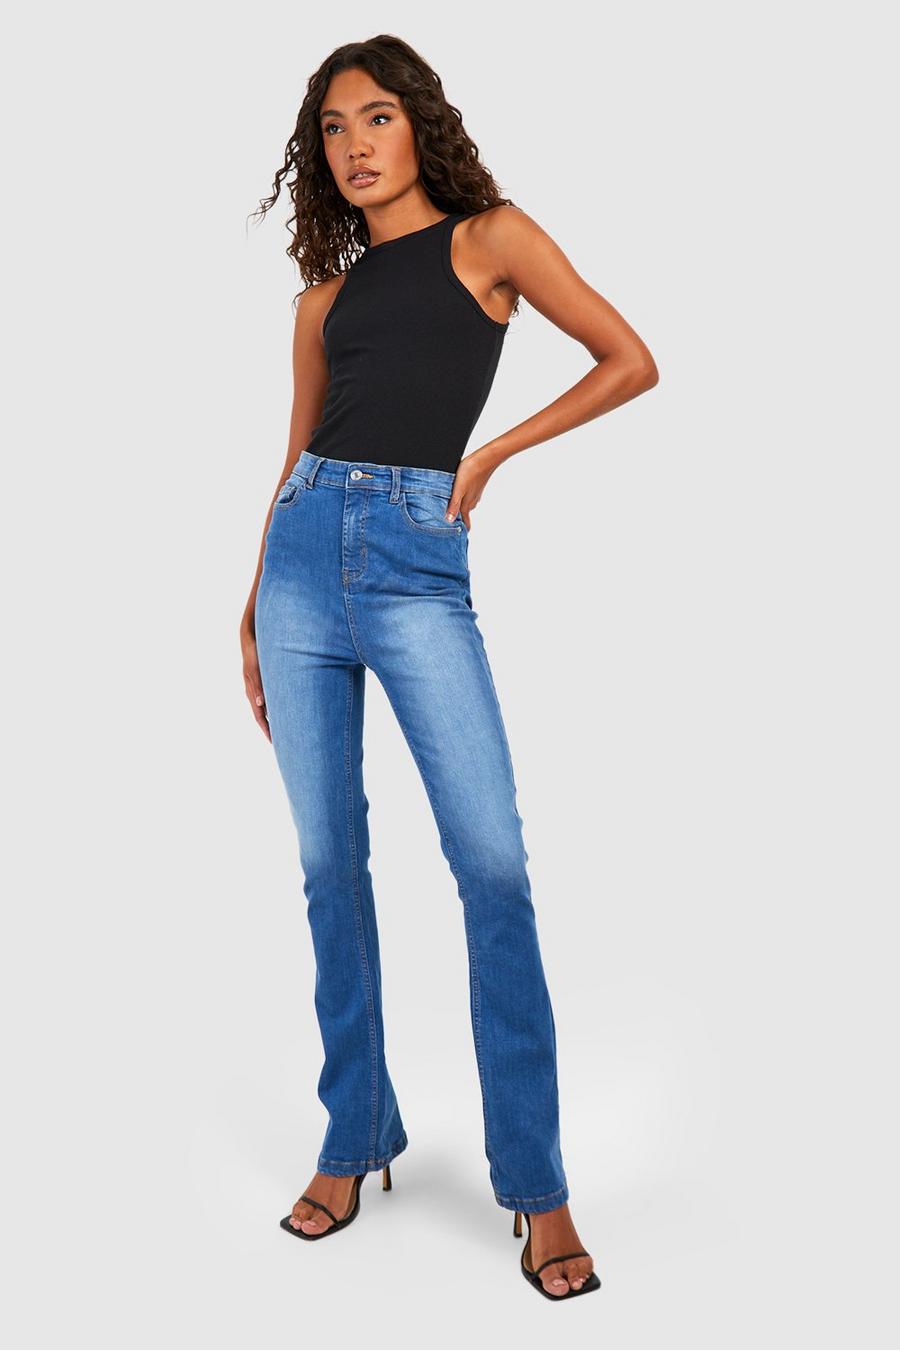 Jeans Tall a vita media Skinny Fit blu scuro - 91 cm, Dark blue